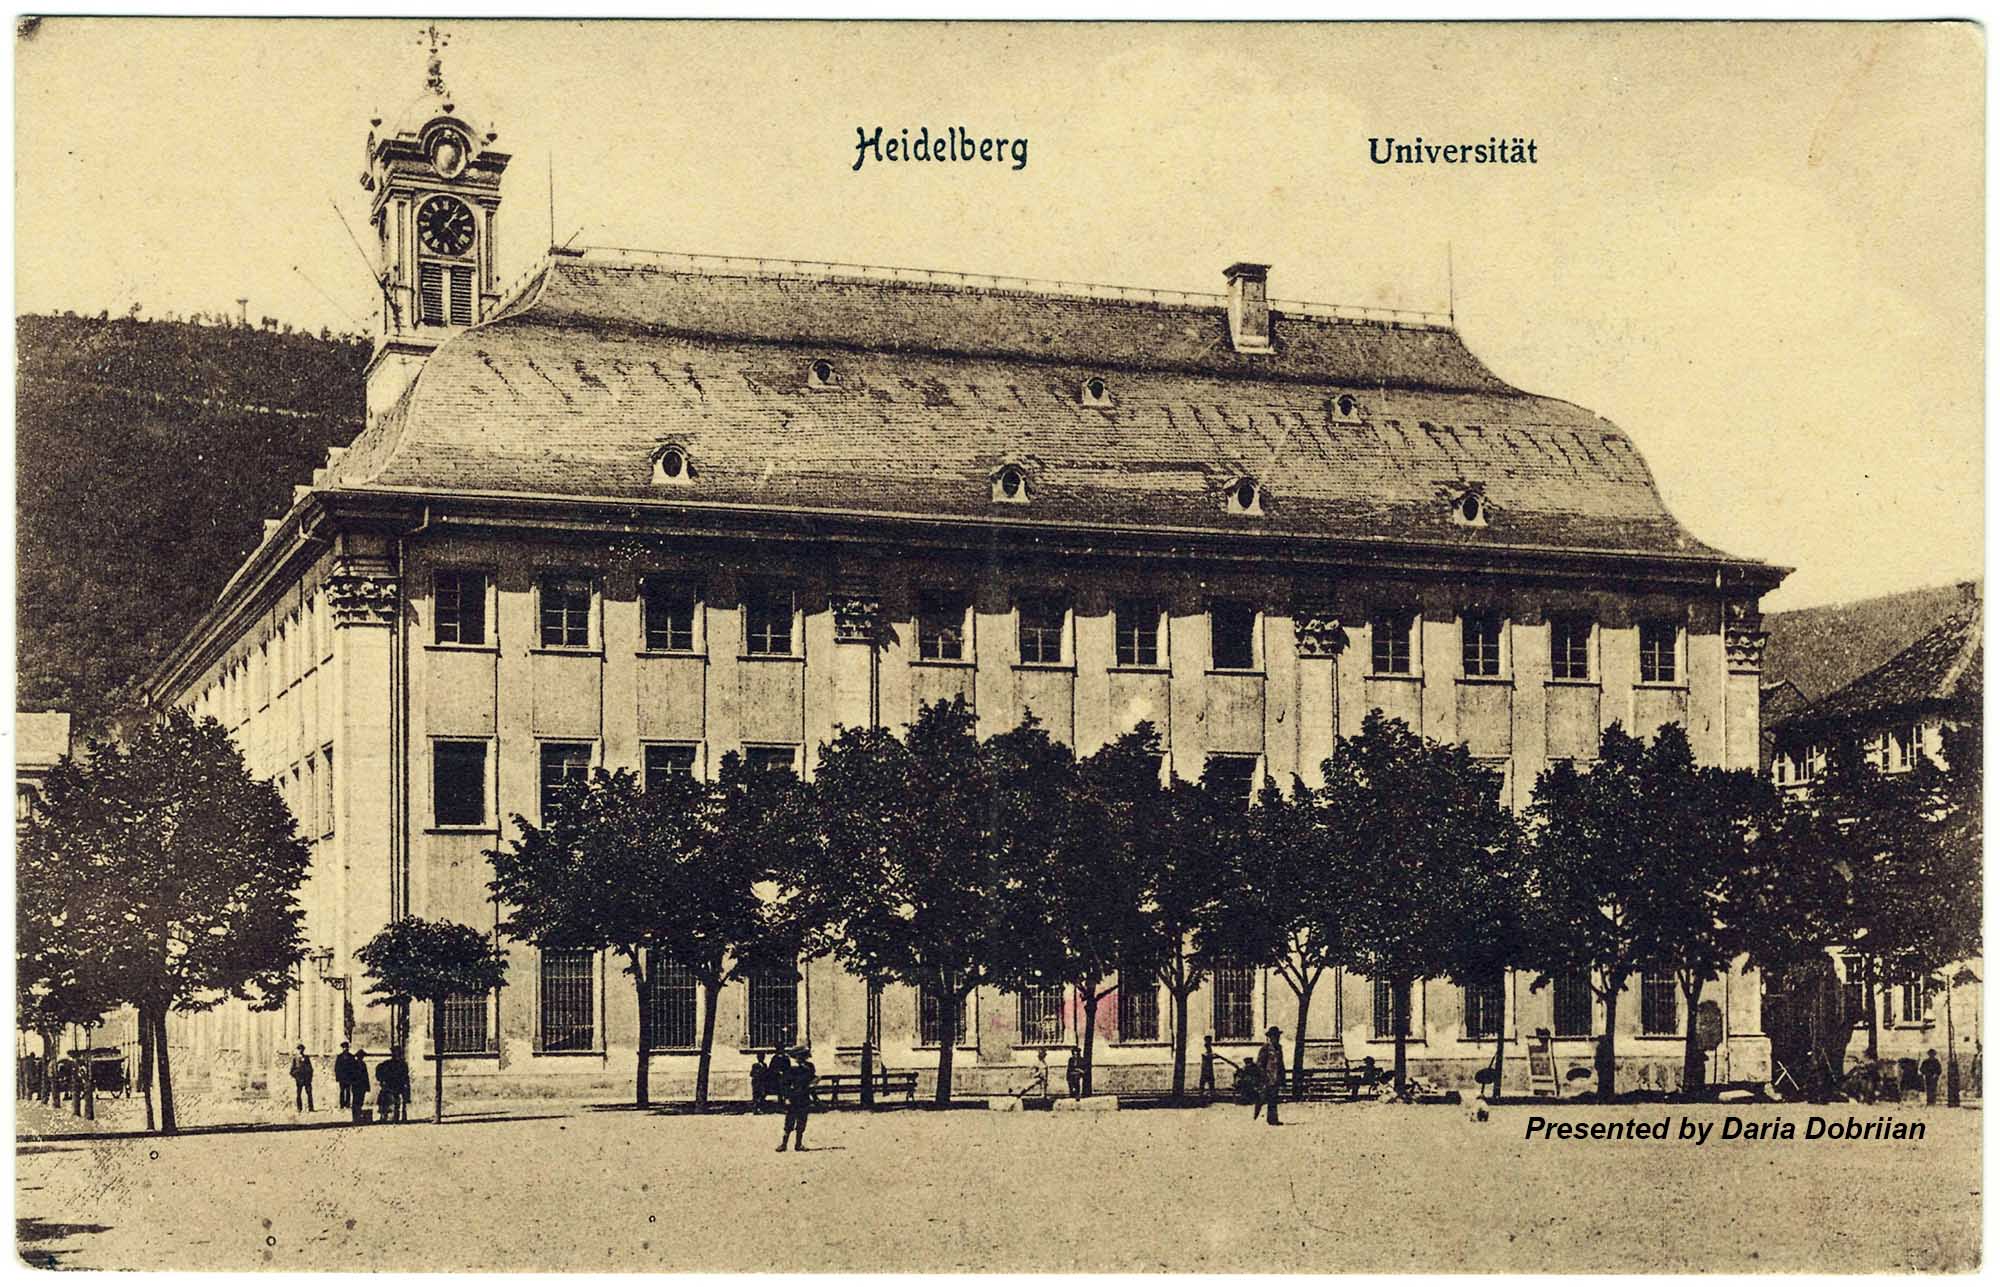 Heidelberg Universität - University